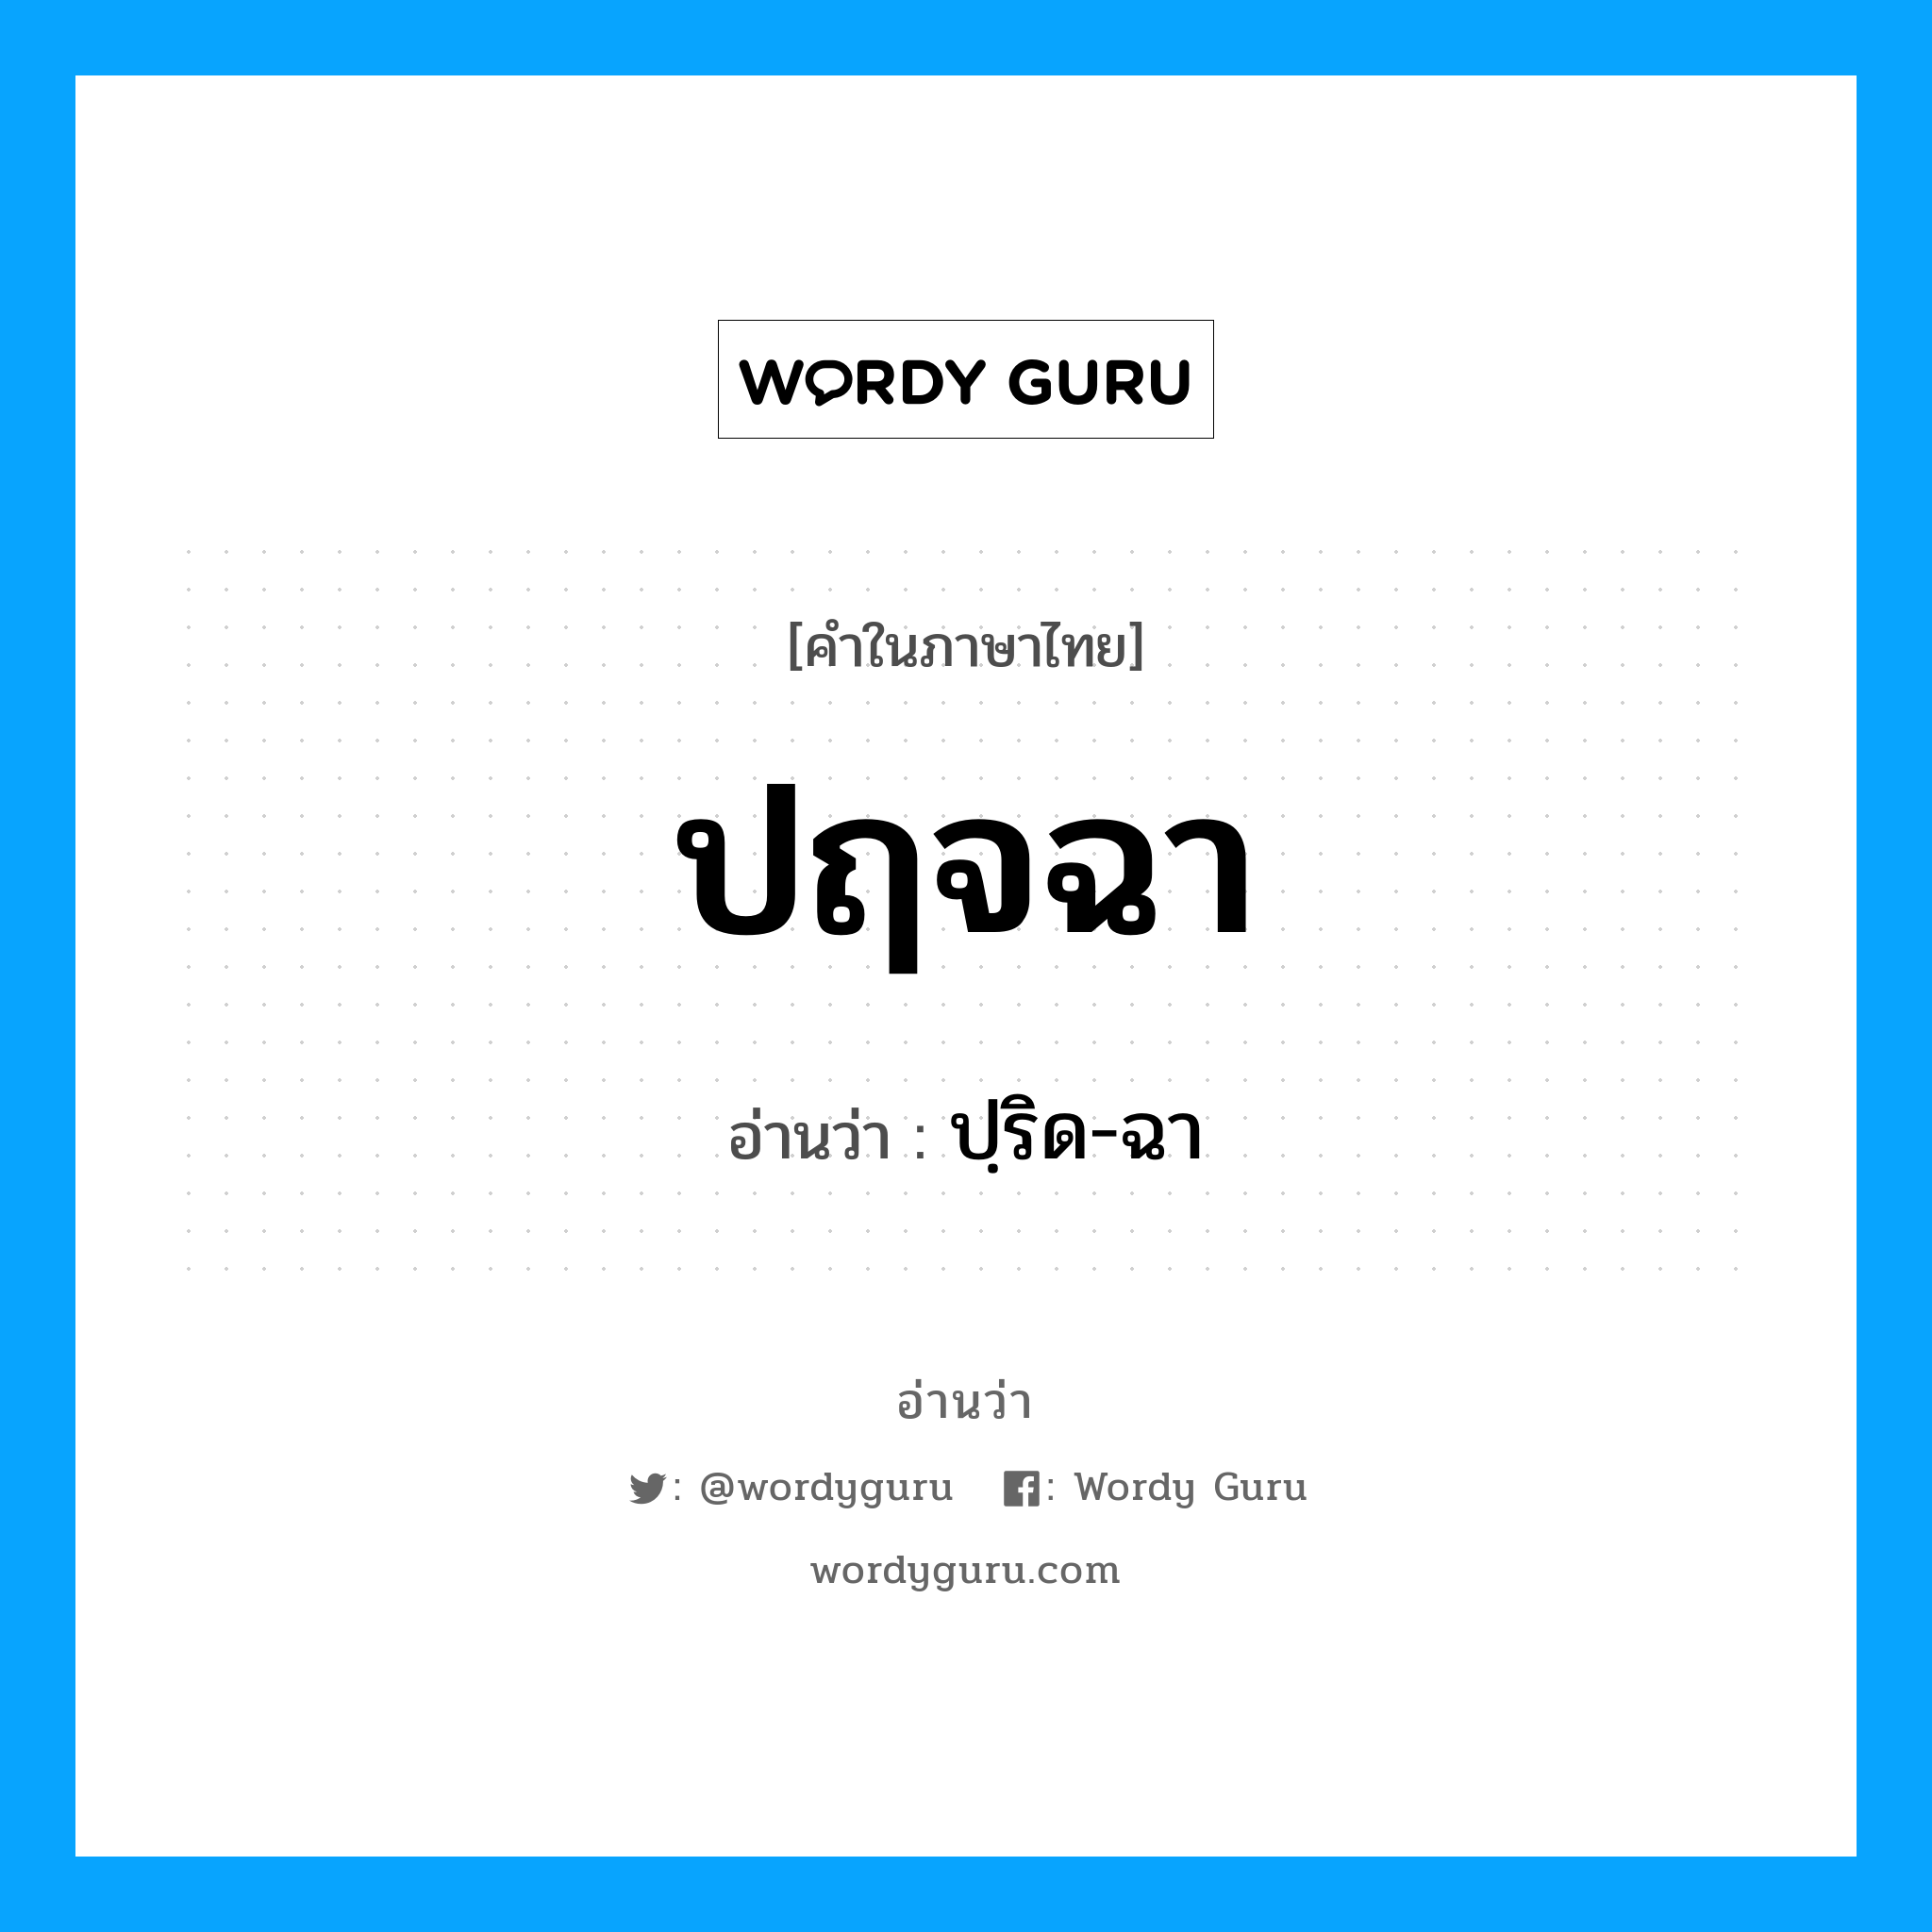 ปฺริด-ฉา เป็นคำอ่านของคำไหน?, คำในภาษาไทย ปฺริด-ฉา อ่านว่า ปฤจฉา